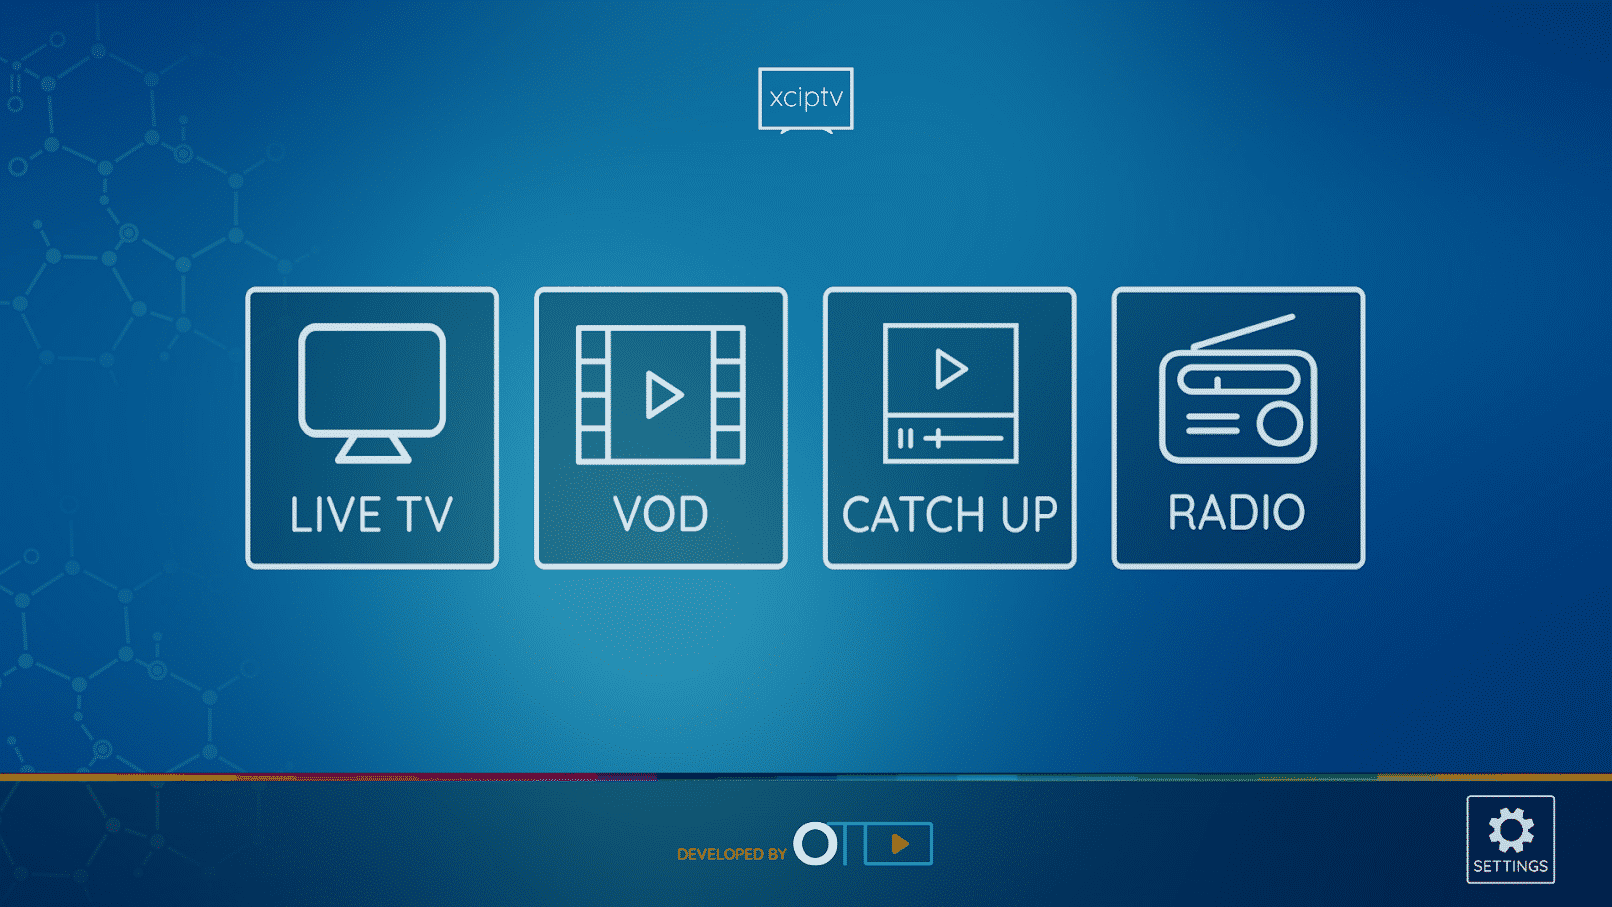 Como utilizar o XCIPTV Player – 2020